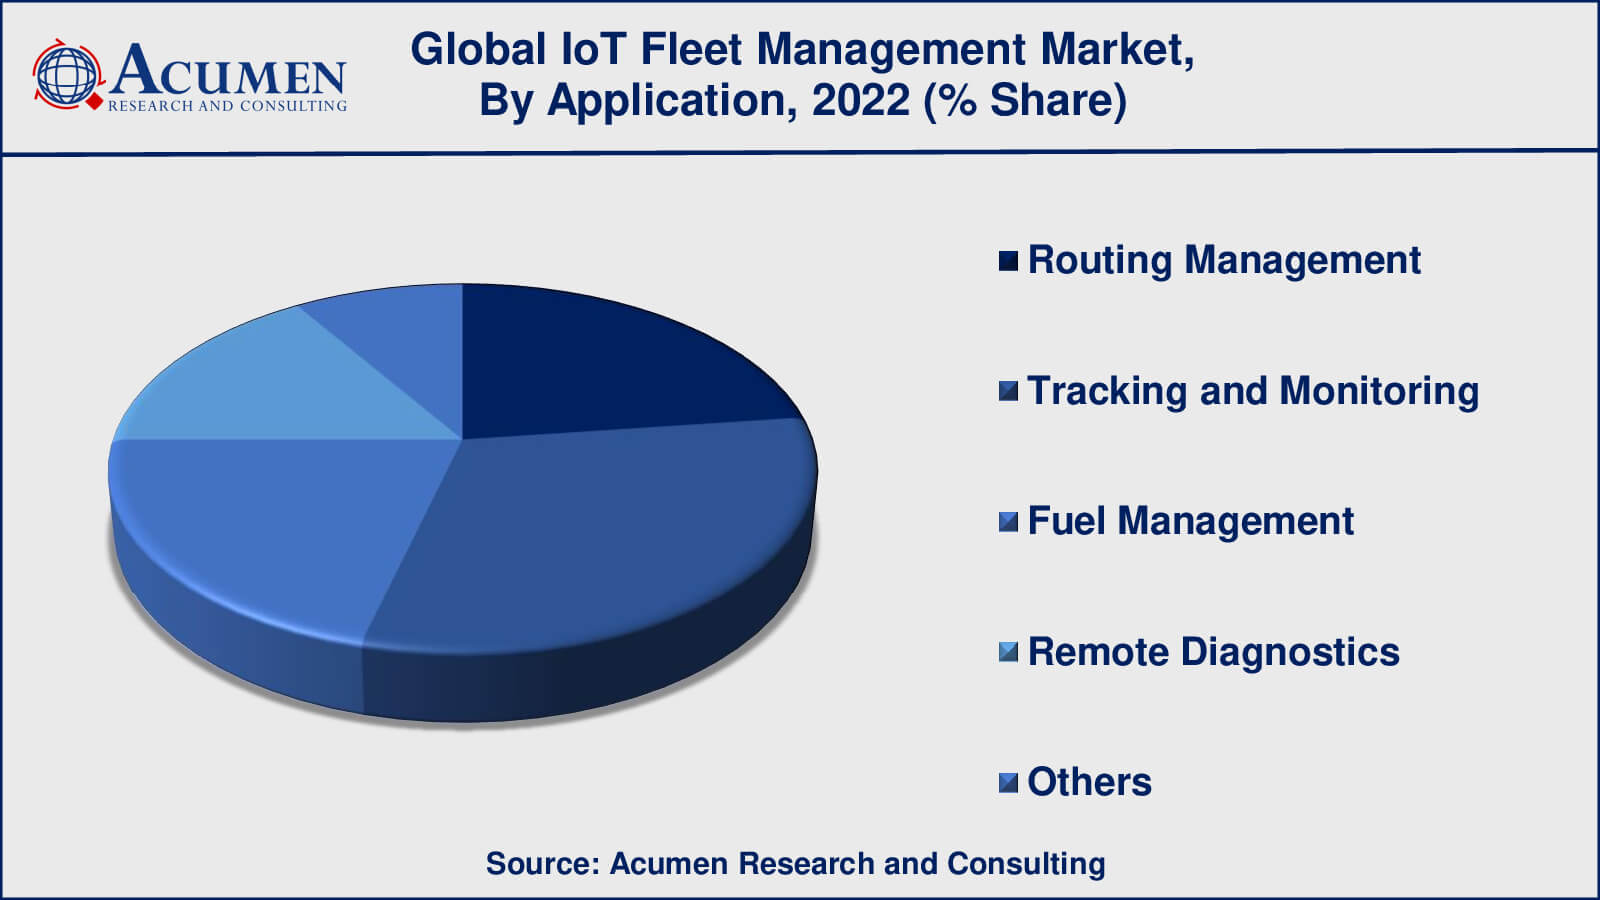 IoT Fleet Management Market Drivers